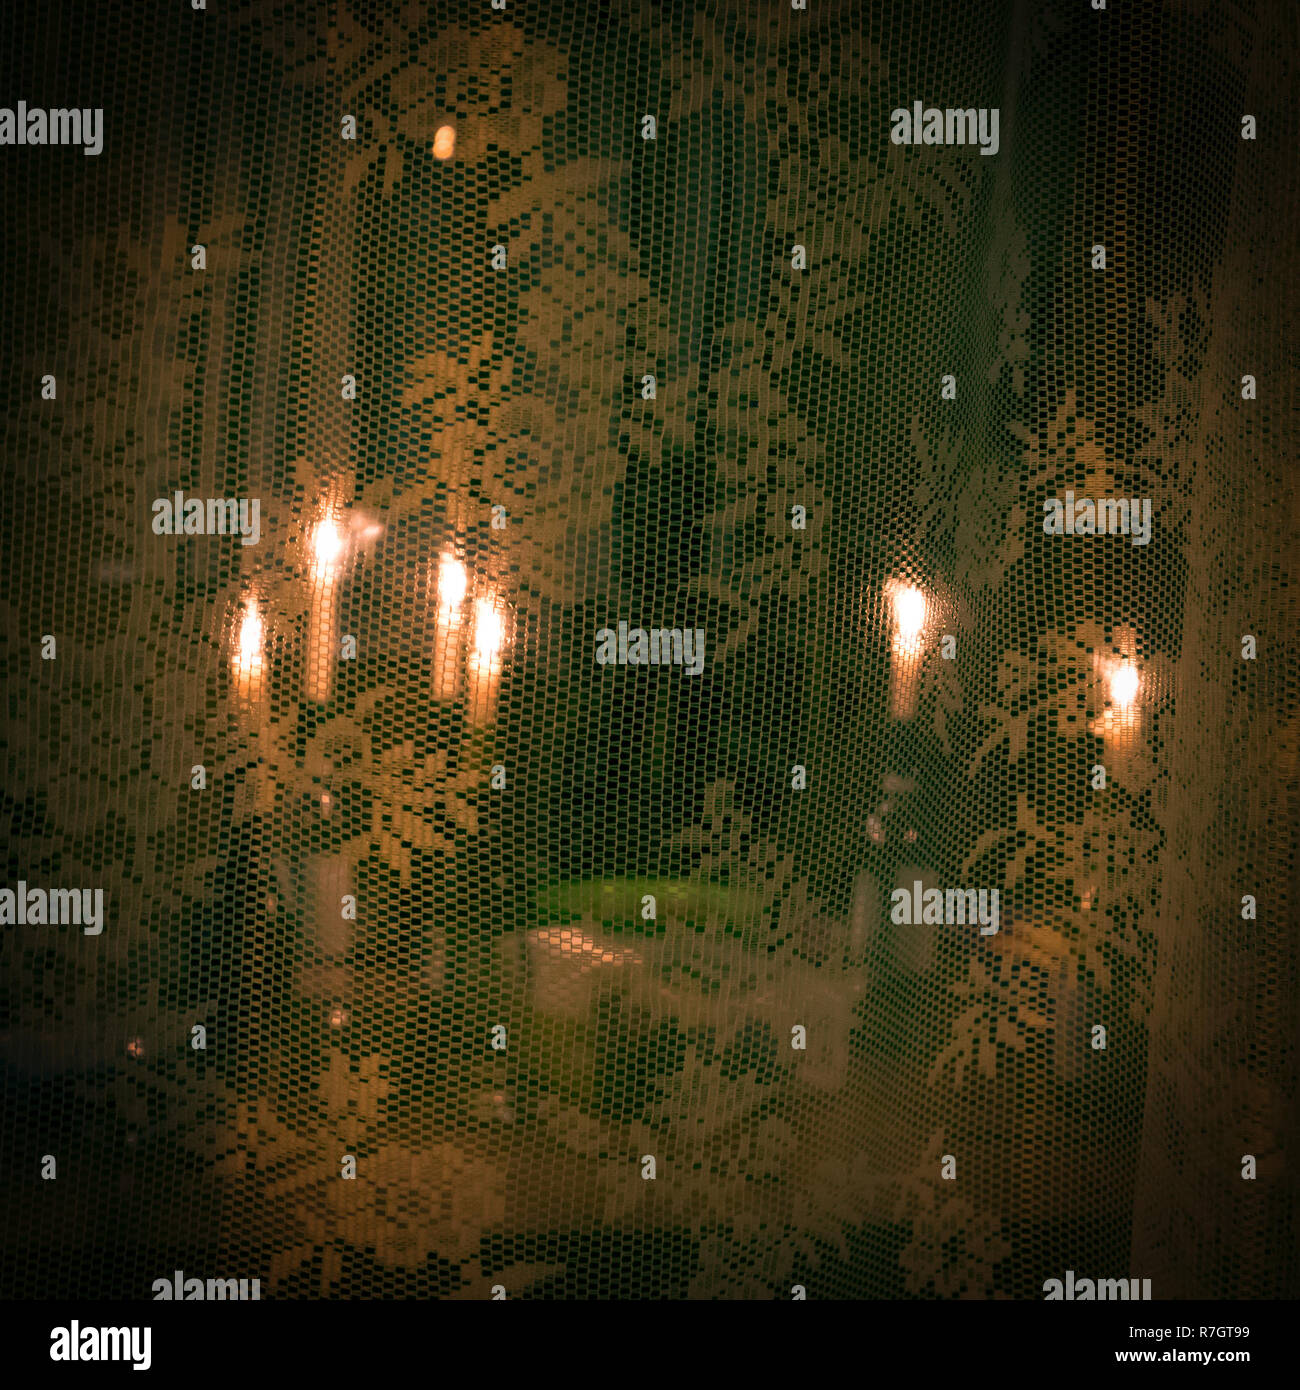 Un certain nombre de bougies allumées dans des bouteilles derrière le rideau de dentelle transparent, fond de Noël romantique dans des tons verts Banque D'Images